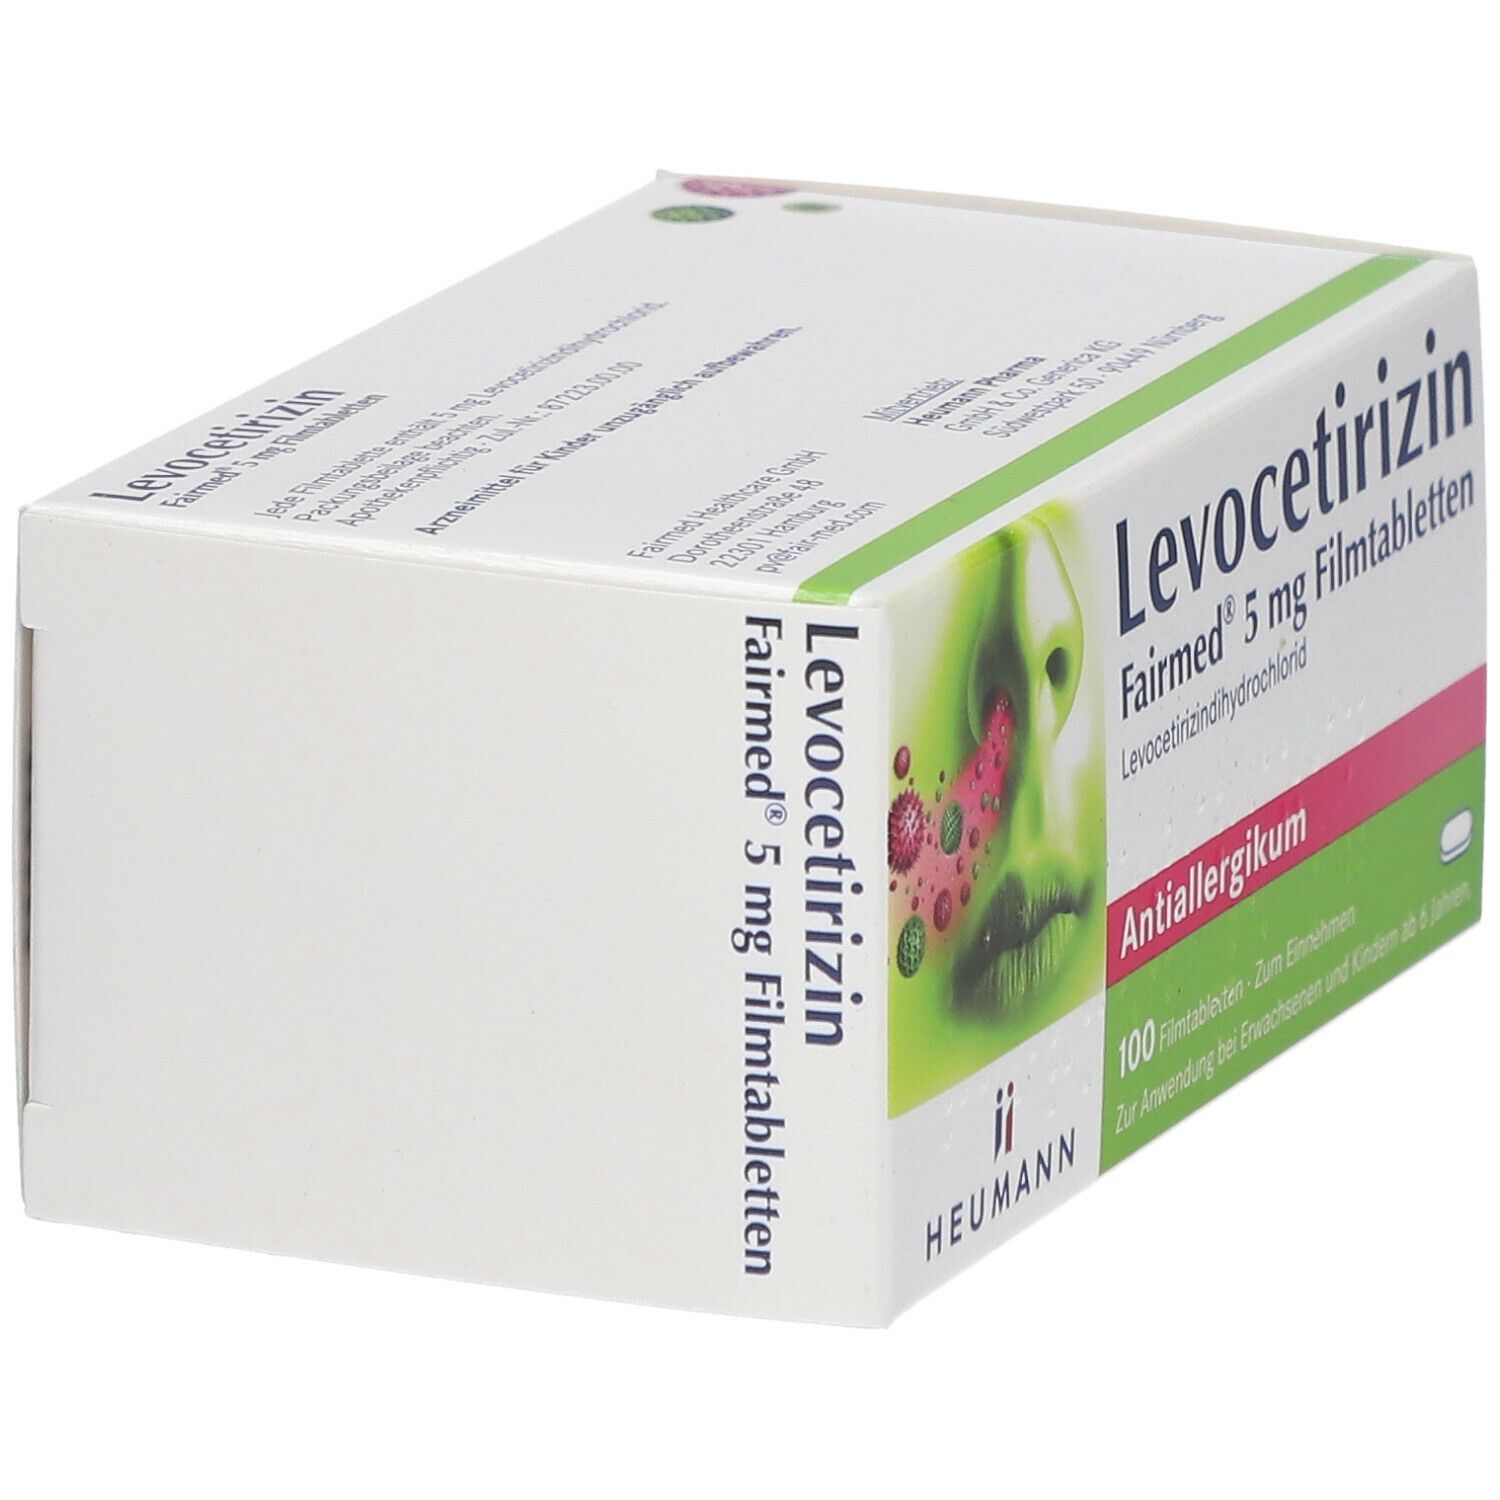 Levocetirizin Fairmed® 5 mg